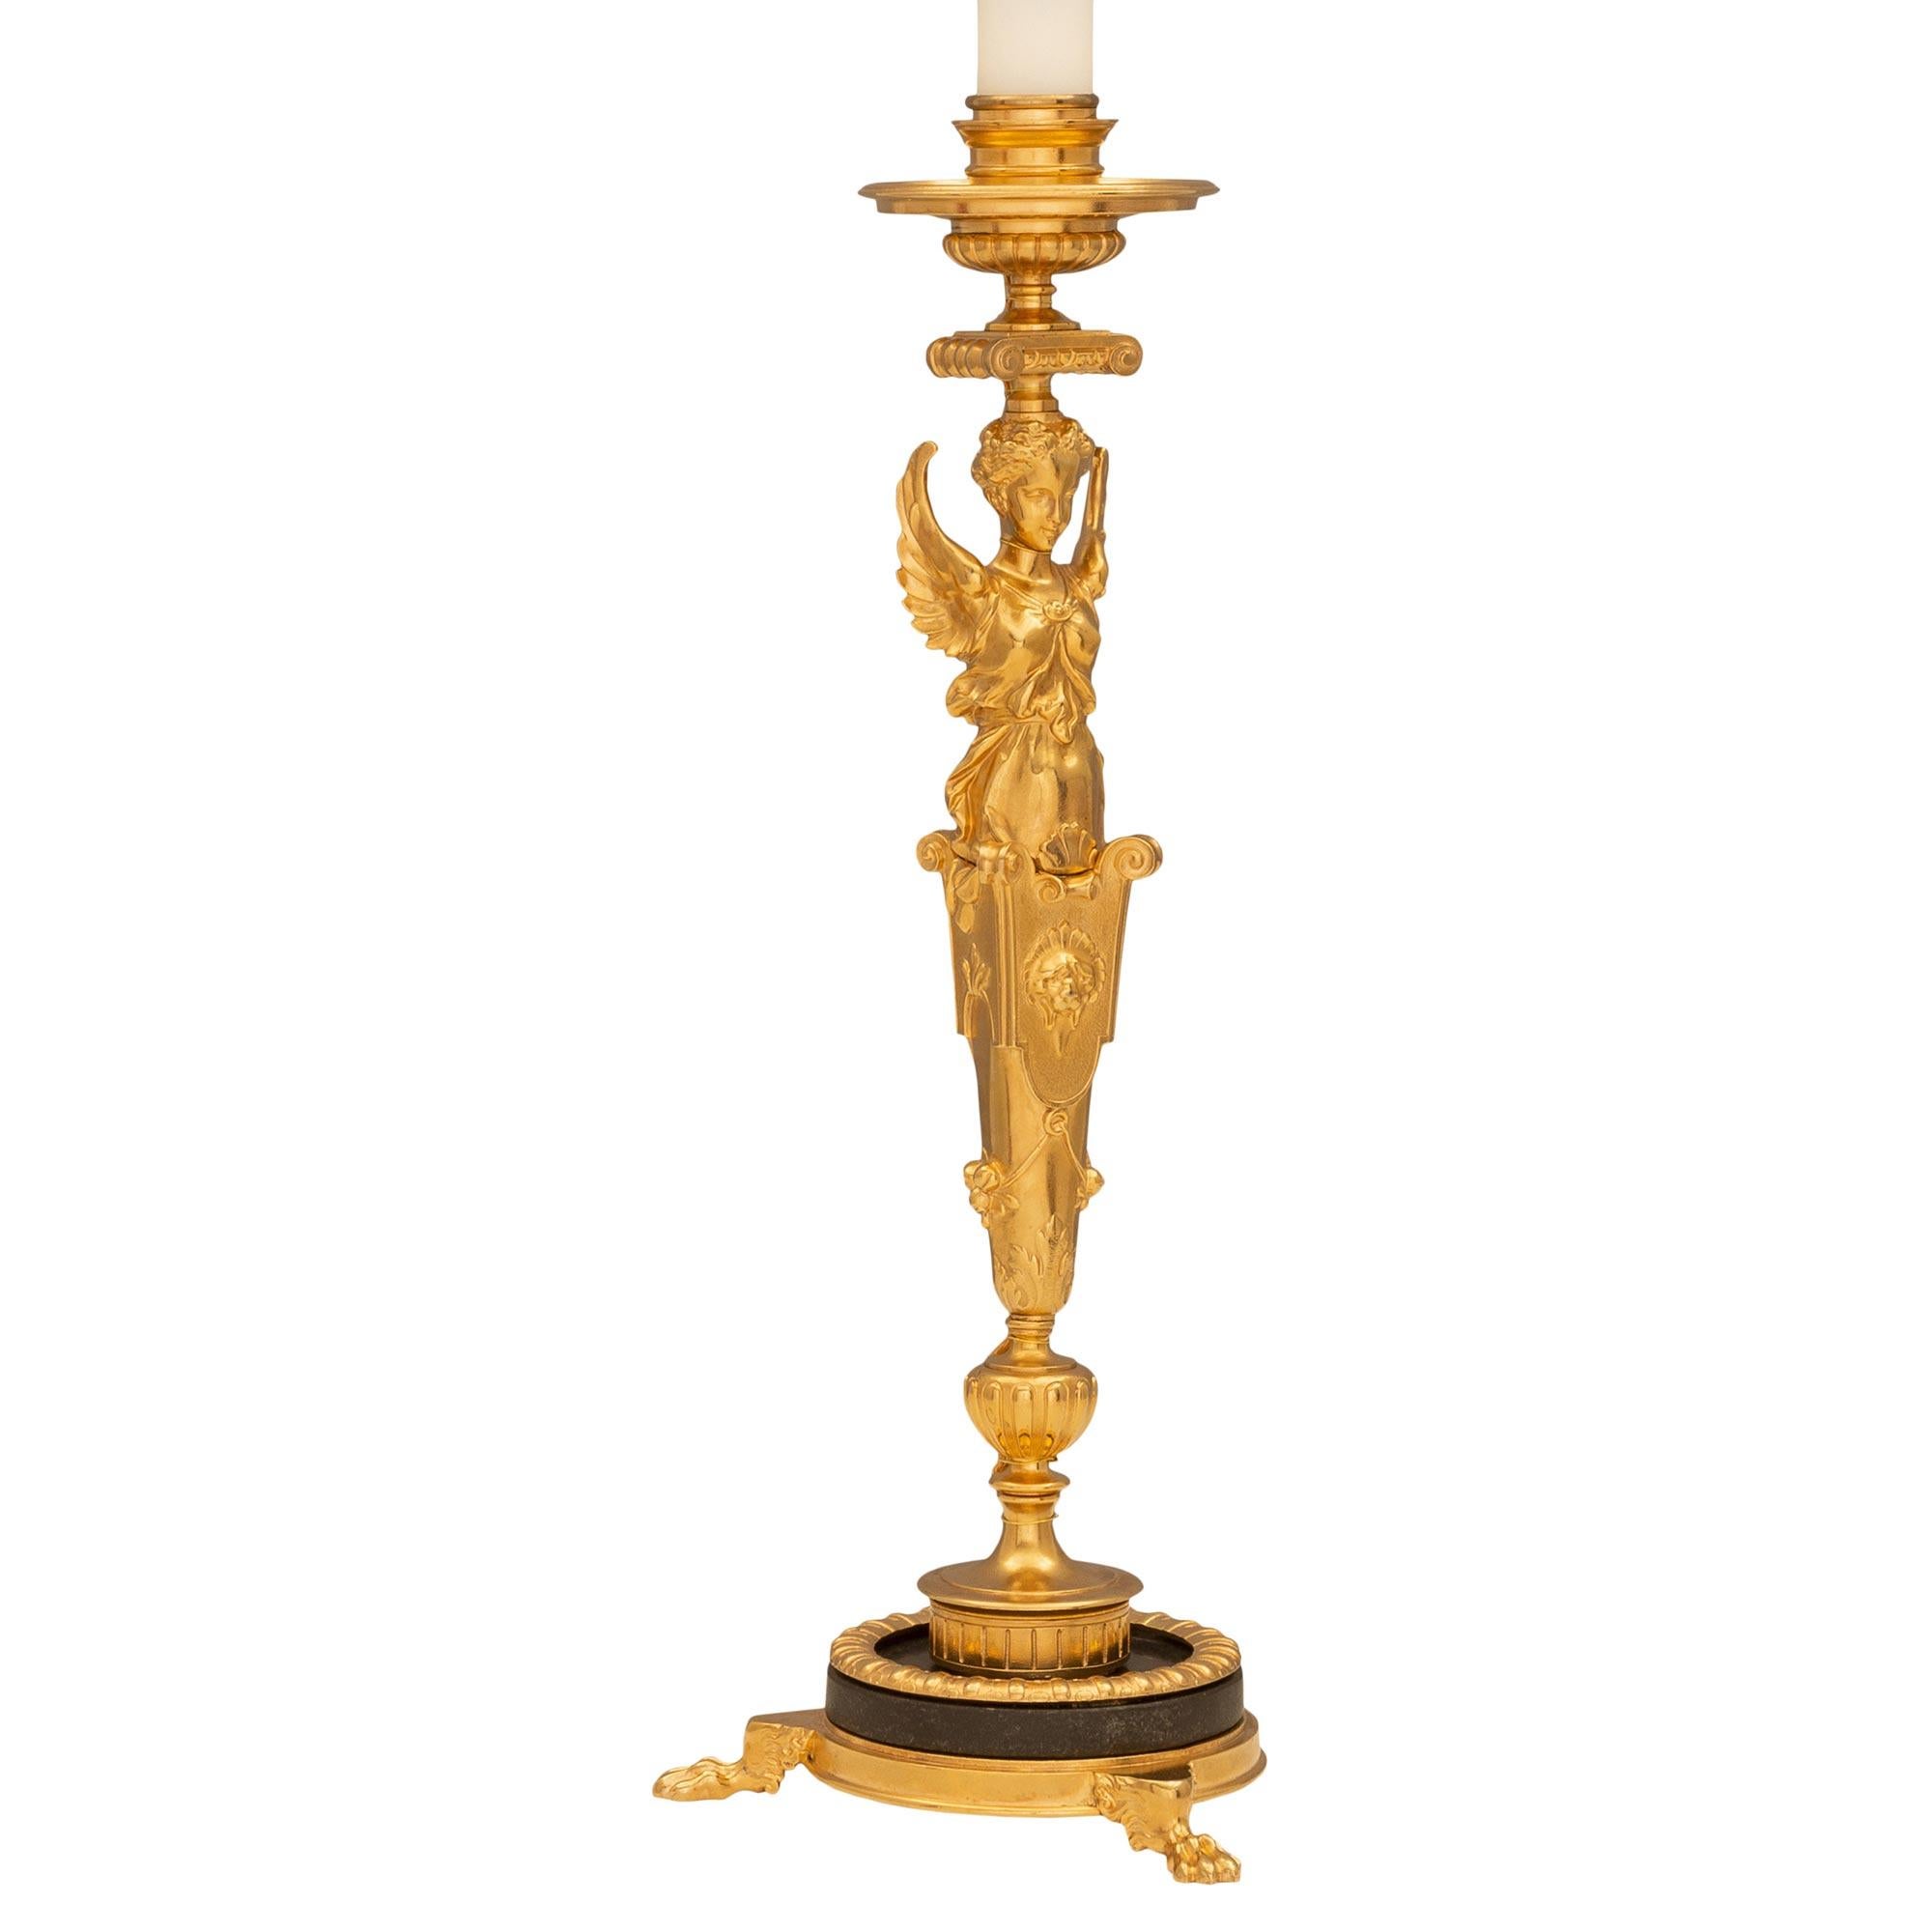 Paire de lampes-chandeliers en bronze patiné et bronze doré de style Renaissance française du 19e siècle. Chaque lampe est surélevée par une fine base circulaire avec un beau dessin moucheté, trois beaux pieds en patte, un support en bronze patiné